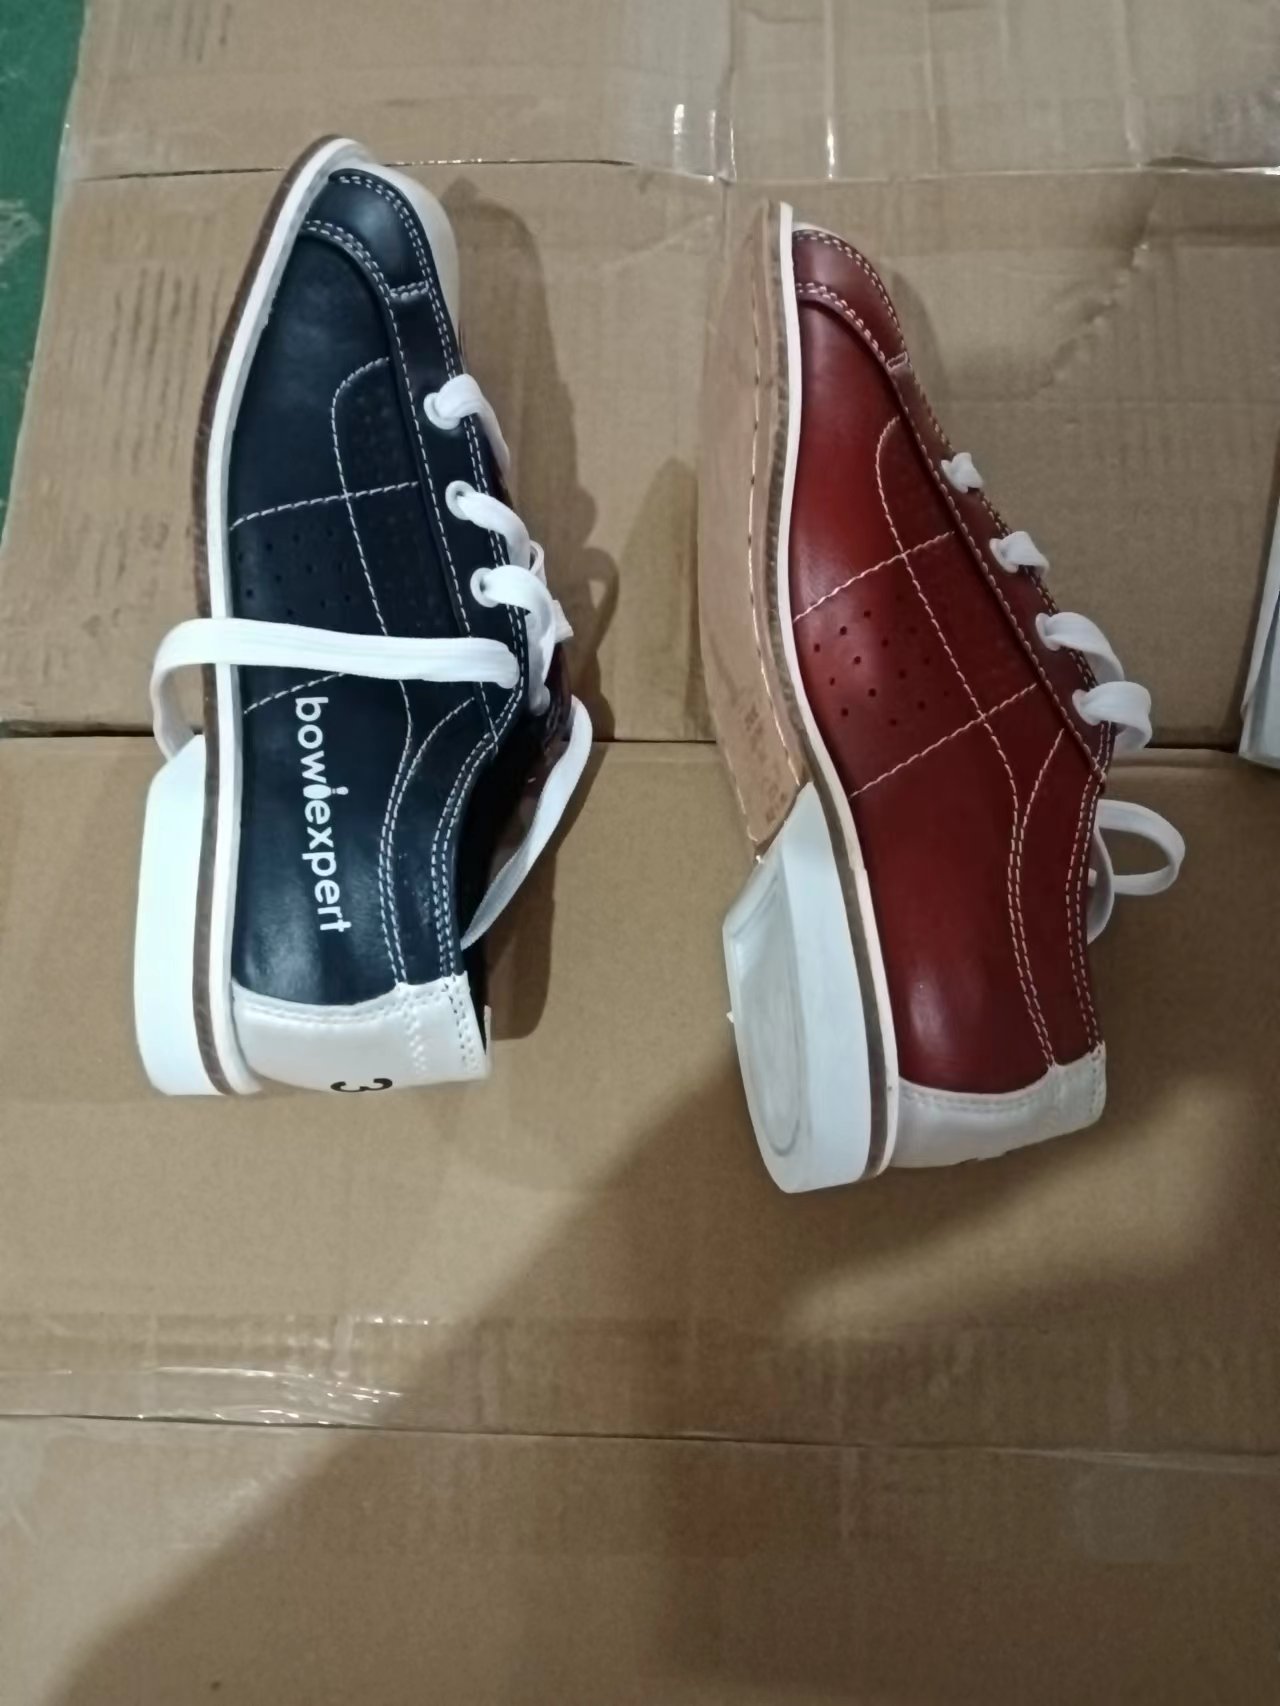 Обувь для боулинга от китайских поставщиков